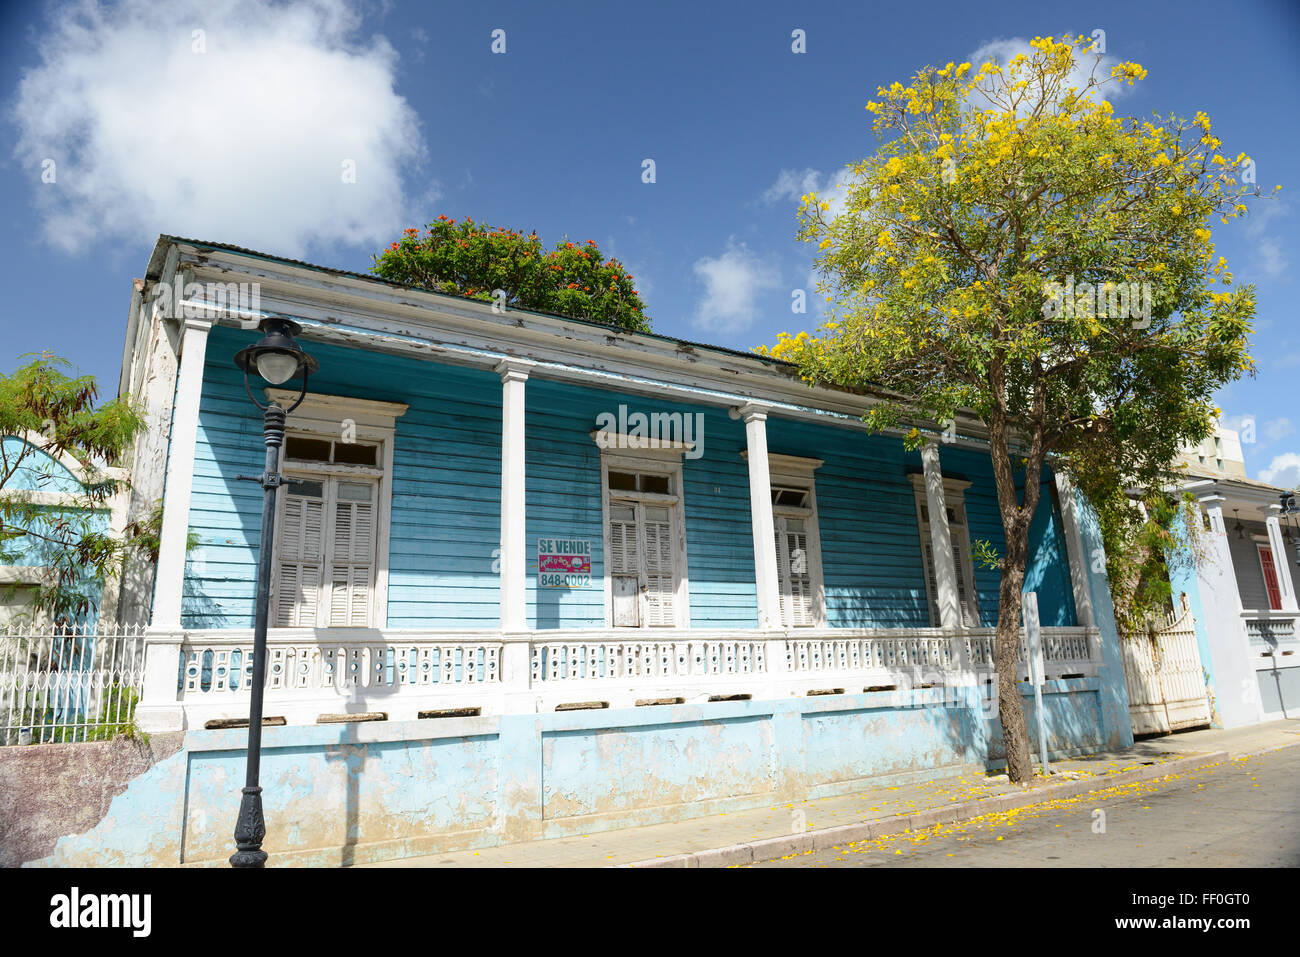 Casa in vendita in un Ponce Creole stile architettonico. Ponce, Puerto Rico. Isola dei caraibi. Territorio statunitense. Foto Stock